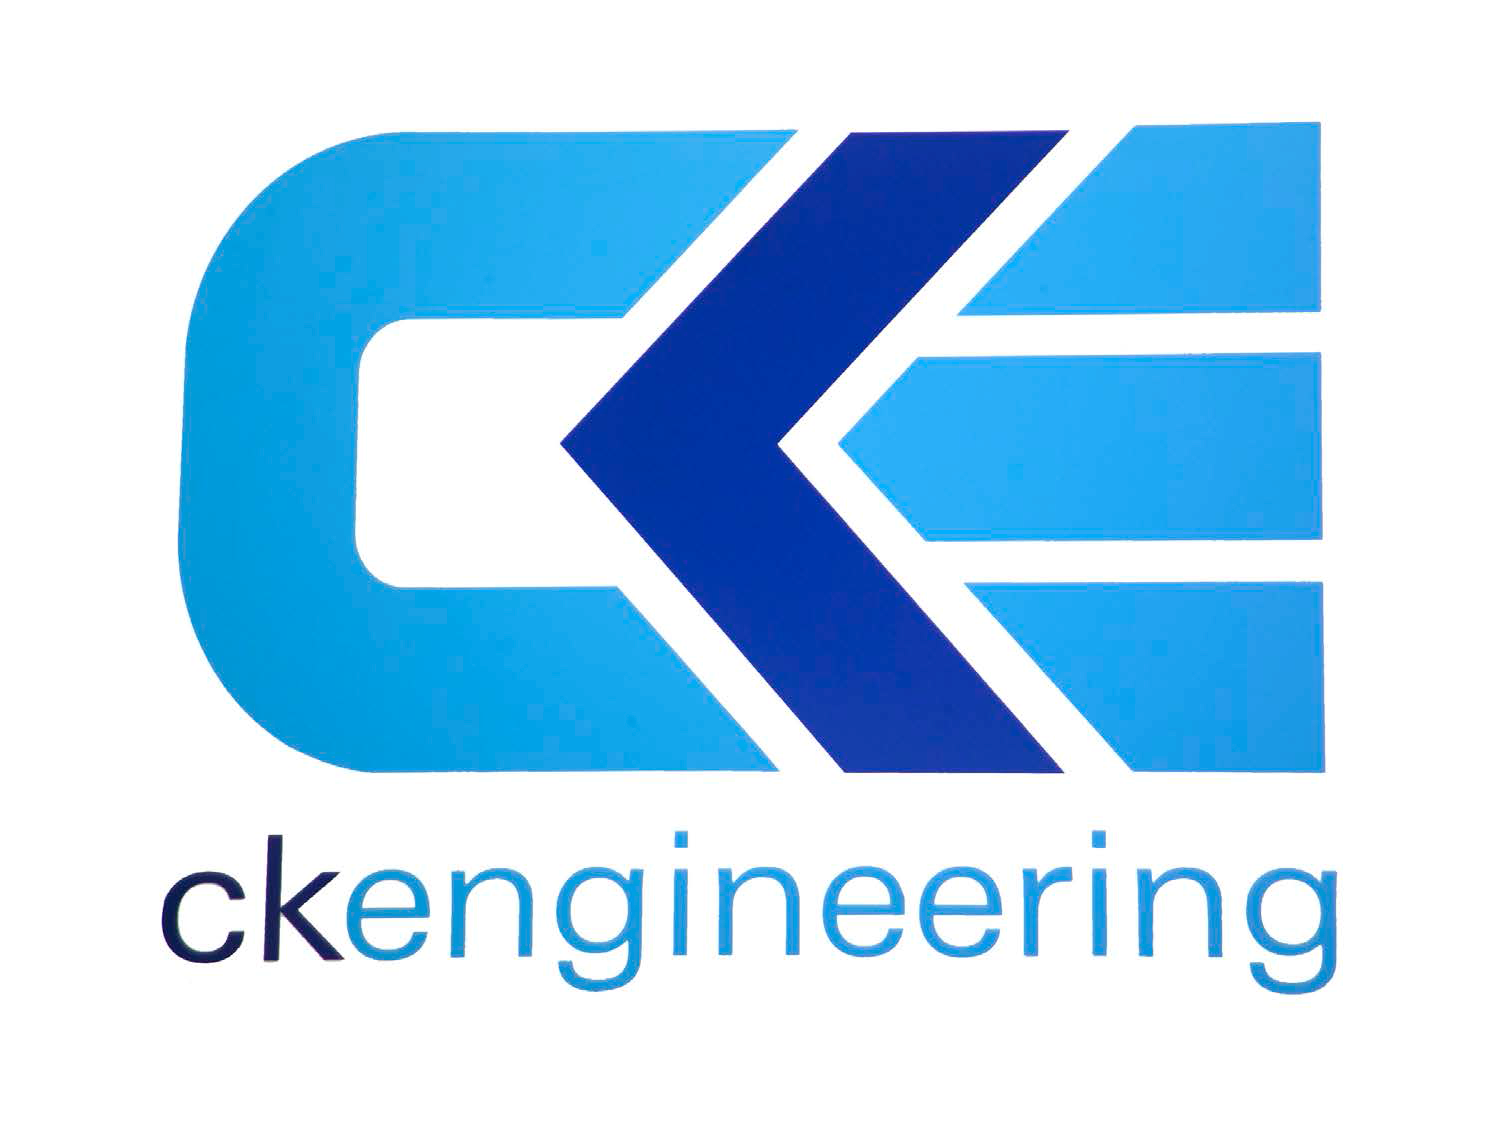 CK Engineering (NI) Ltd